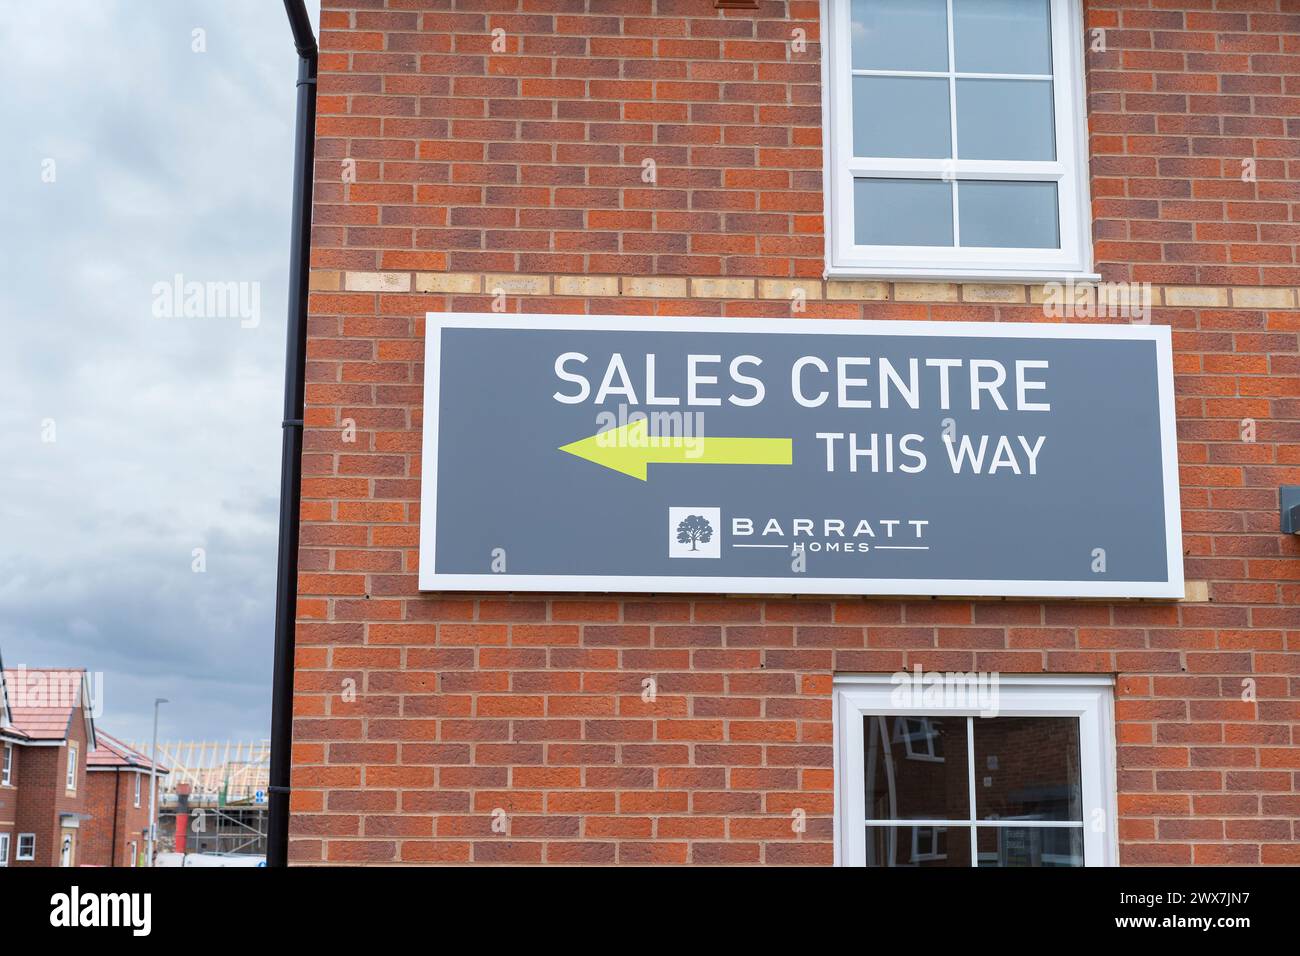 Barratt Homes Sales Centre firma fissata a una nuova costruzione di una casa finita pronta per la vendita sul nuovo sito di sviluppo immobiliare nelle Midlands, Regno Unito. Foto Stock